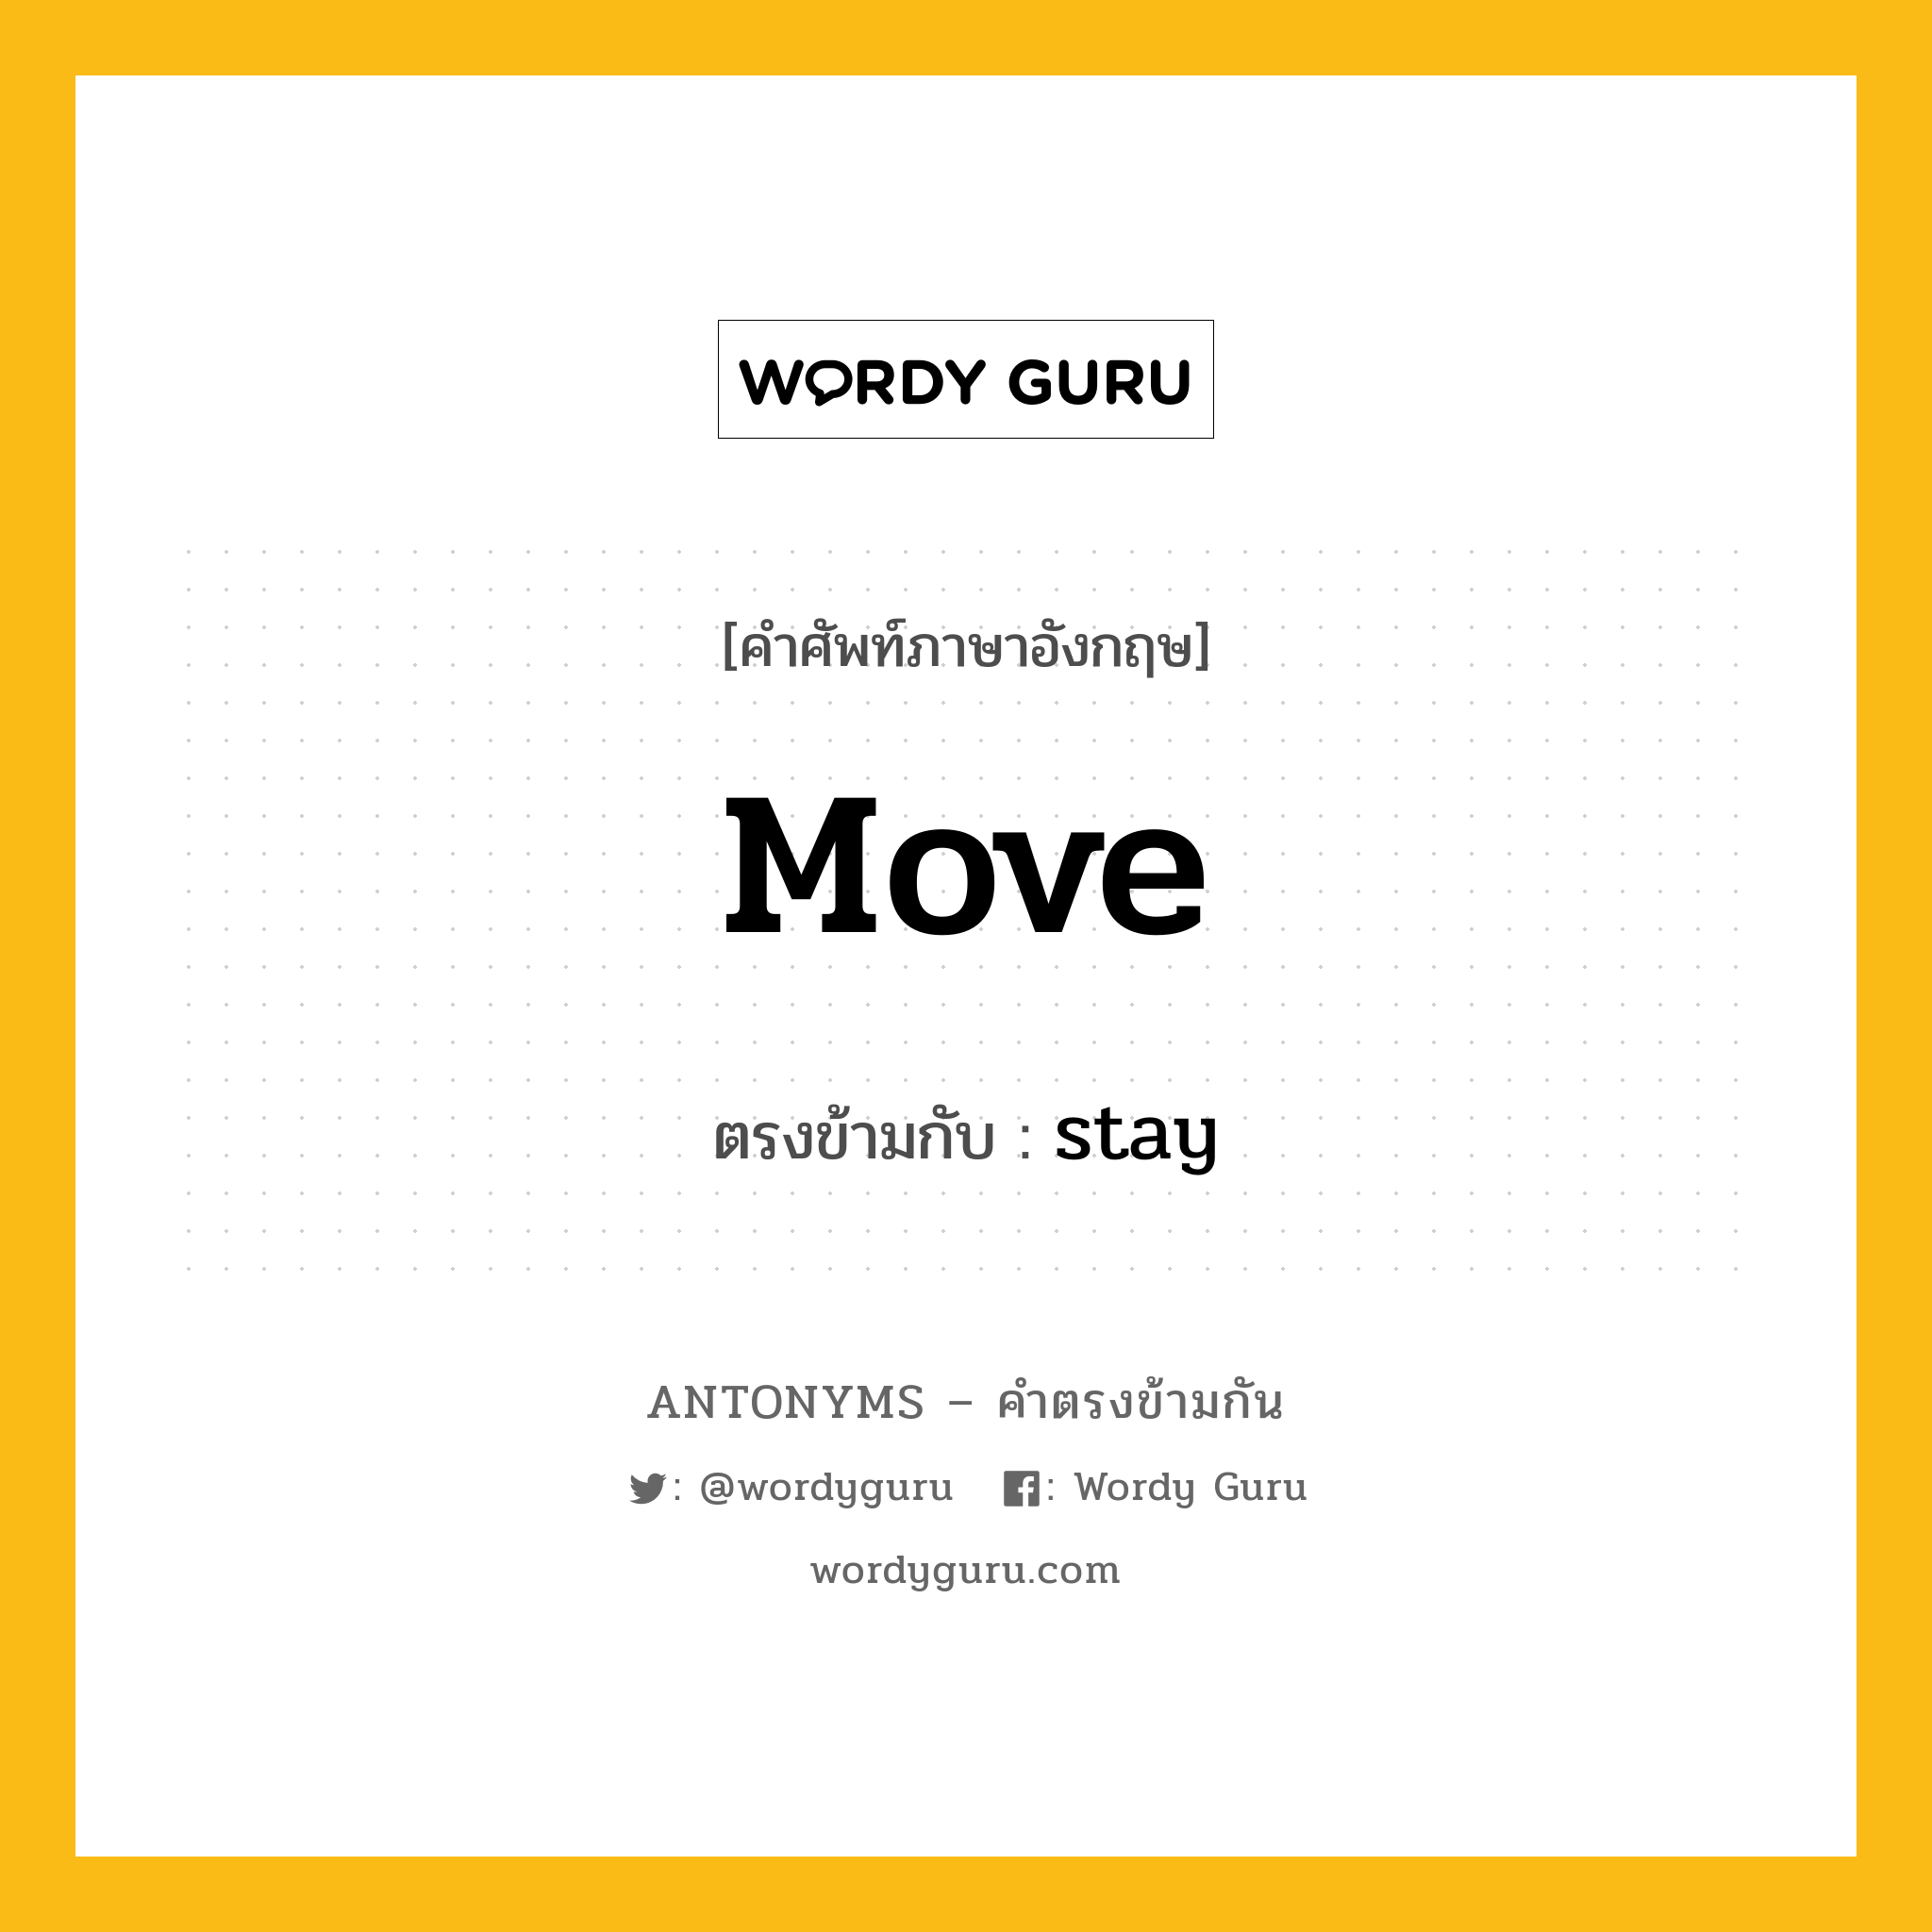 move เป็นคำตรงข้ามกับคำไหนบ้าง?, คำศัพท์ภาษาอังกฤษ move ตรงข้ามกับ stay หมวด stay